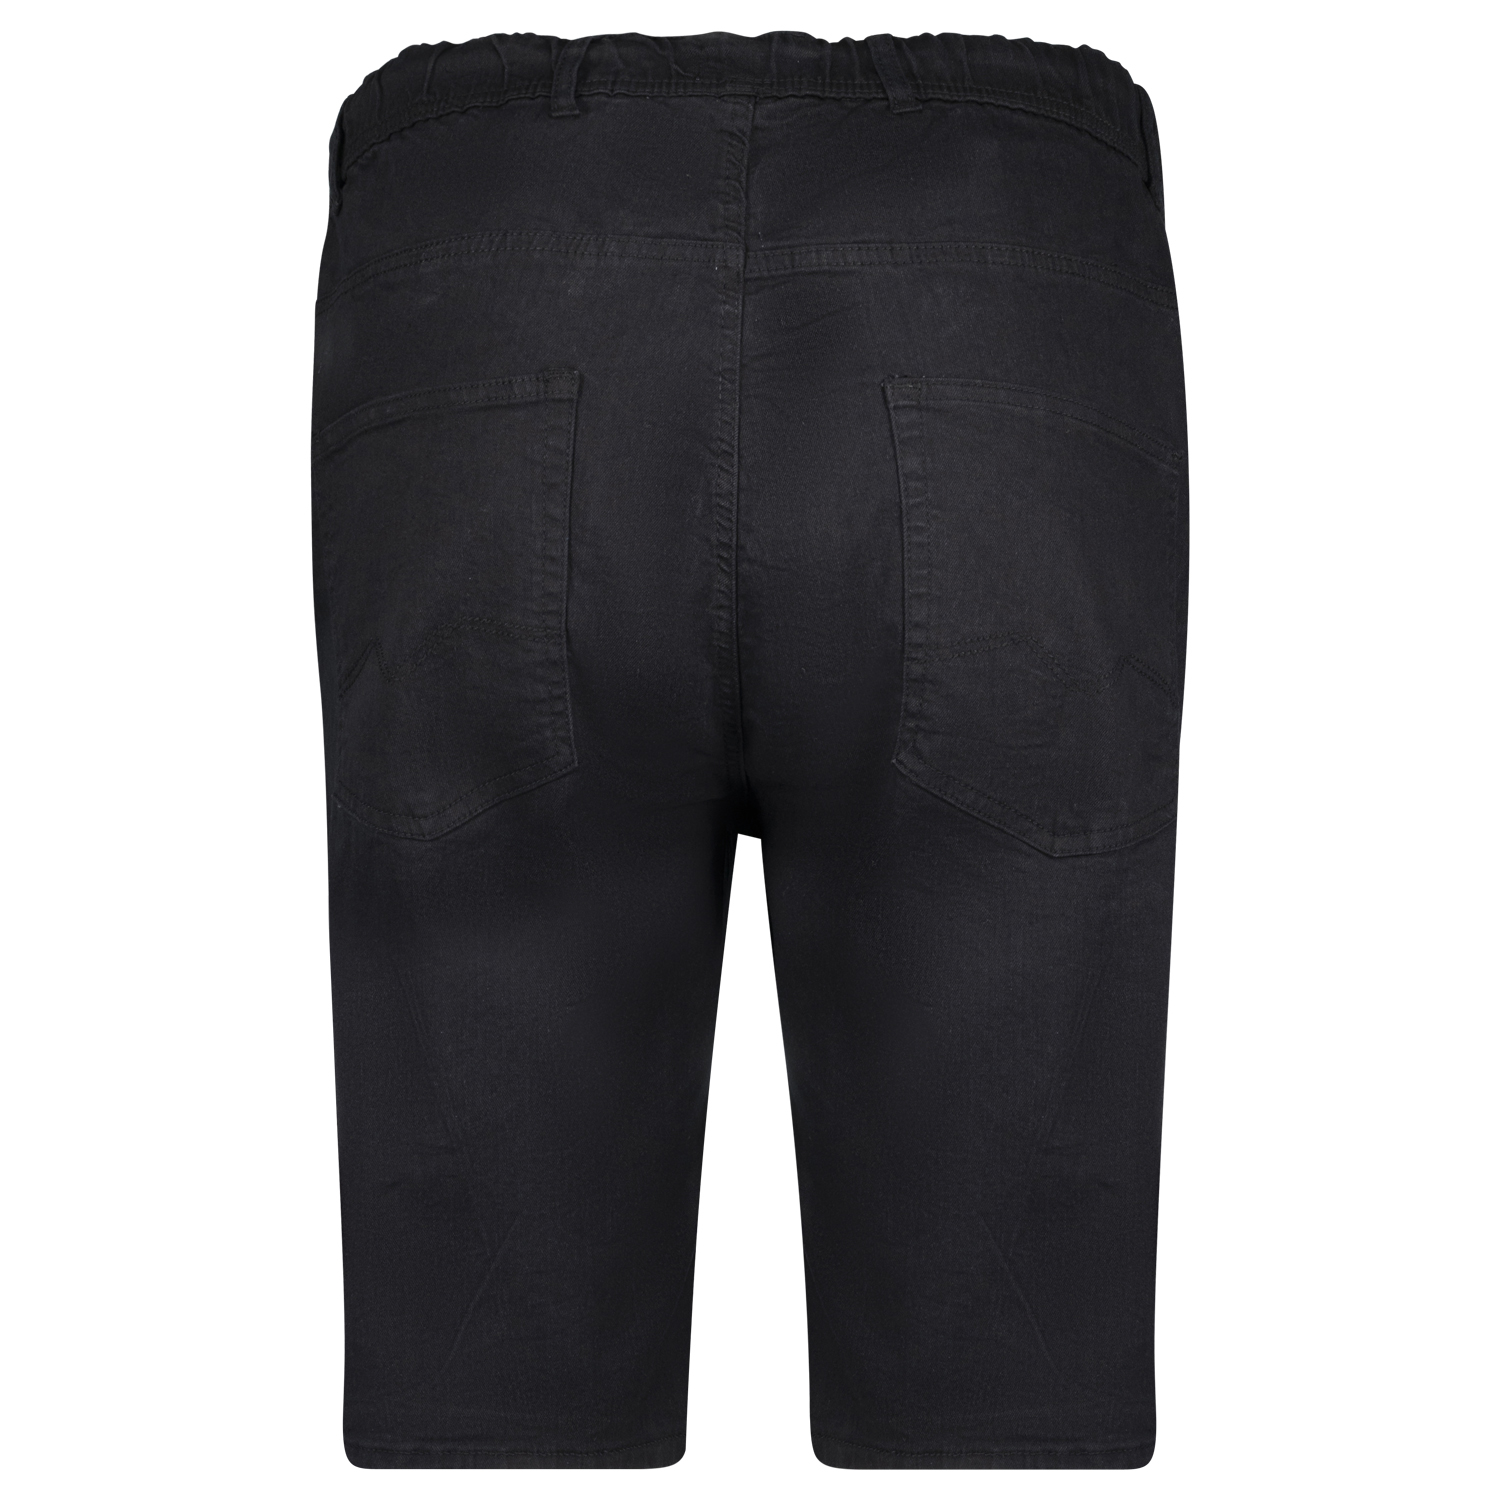 Herren Jeans Jogginghose kurz in großen Größen bis 12XL von Adamo Serie KANSAS schwarz